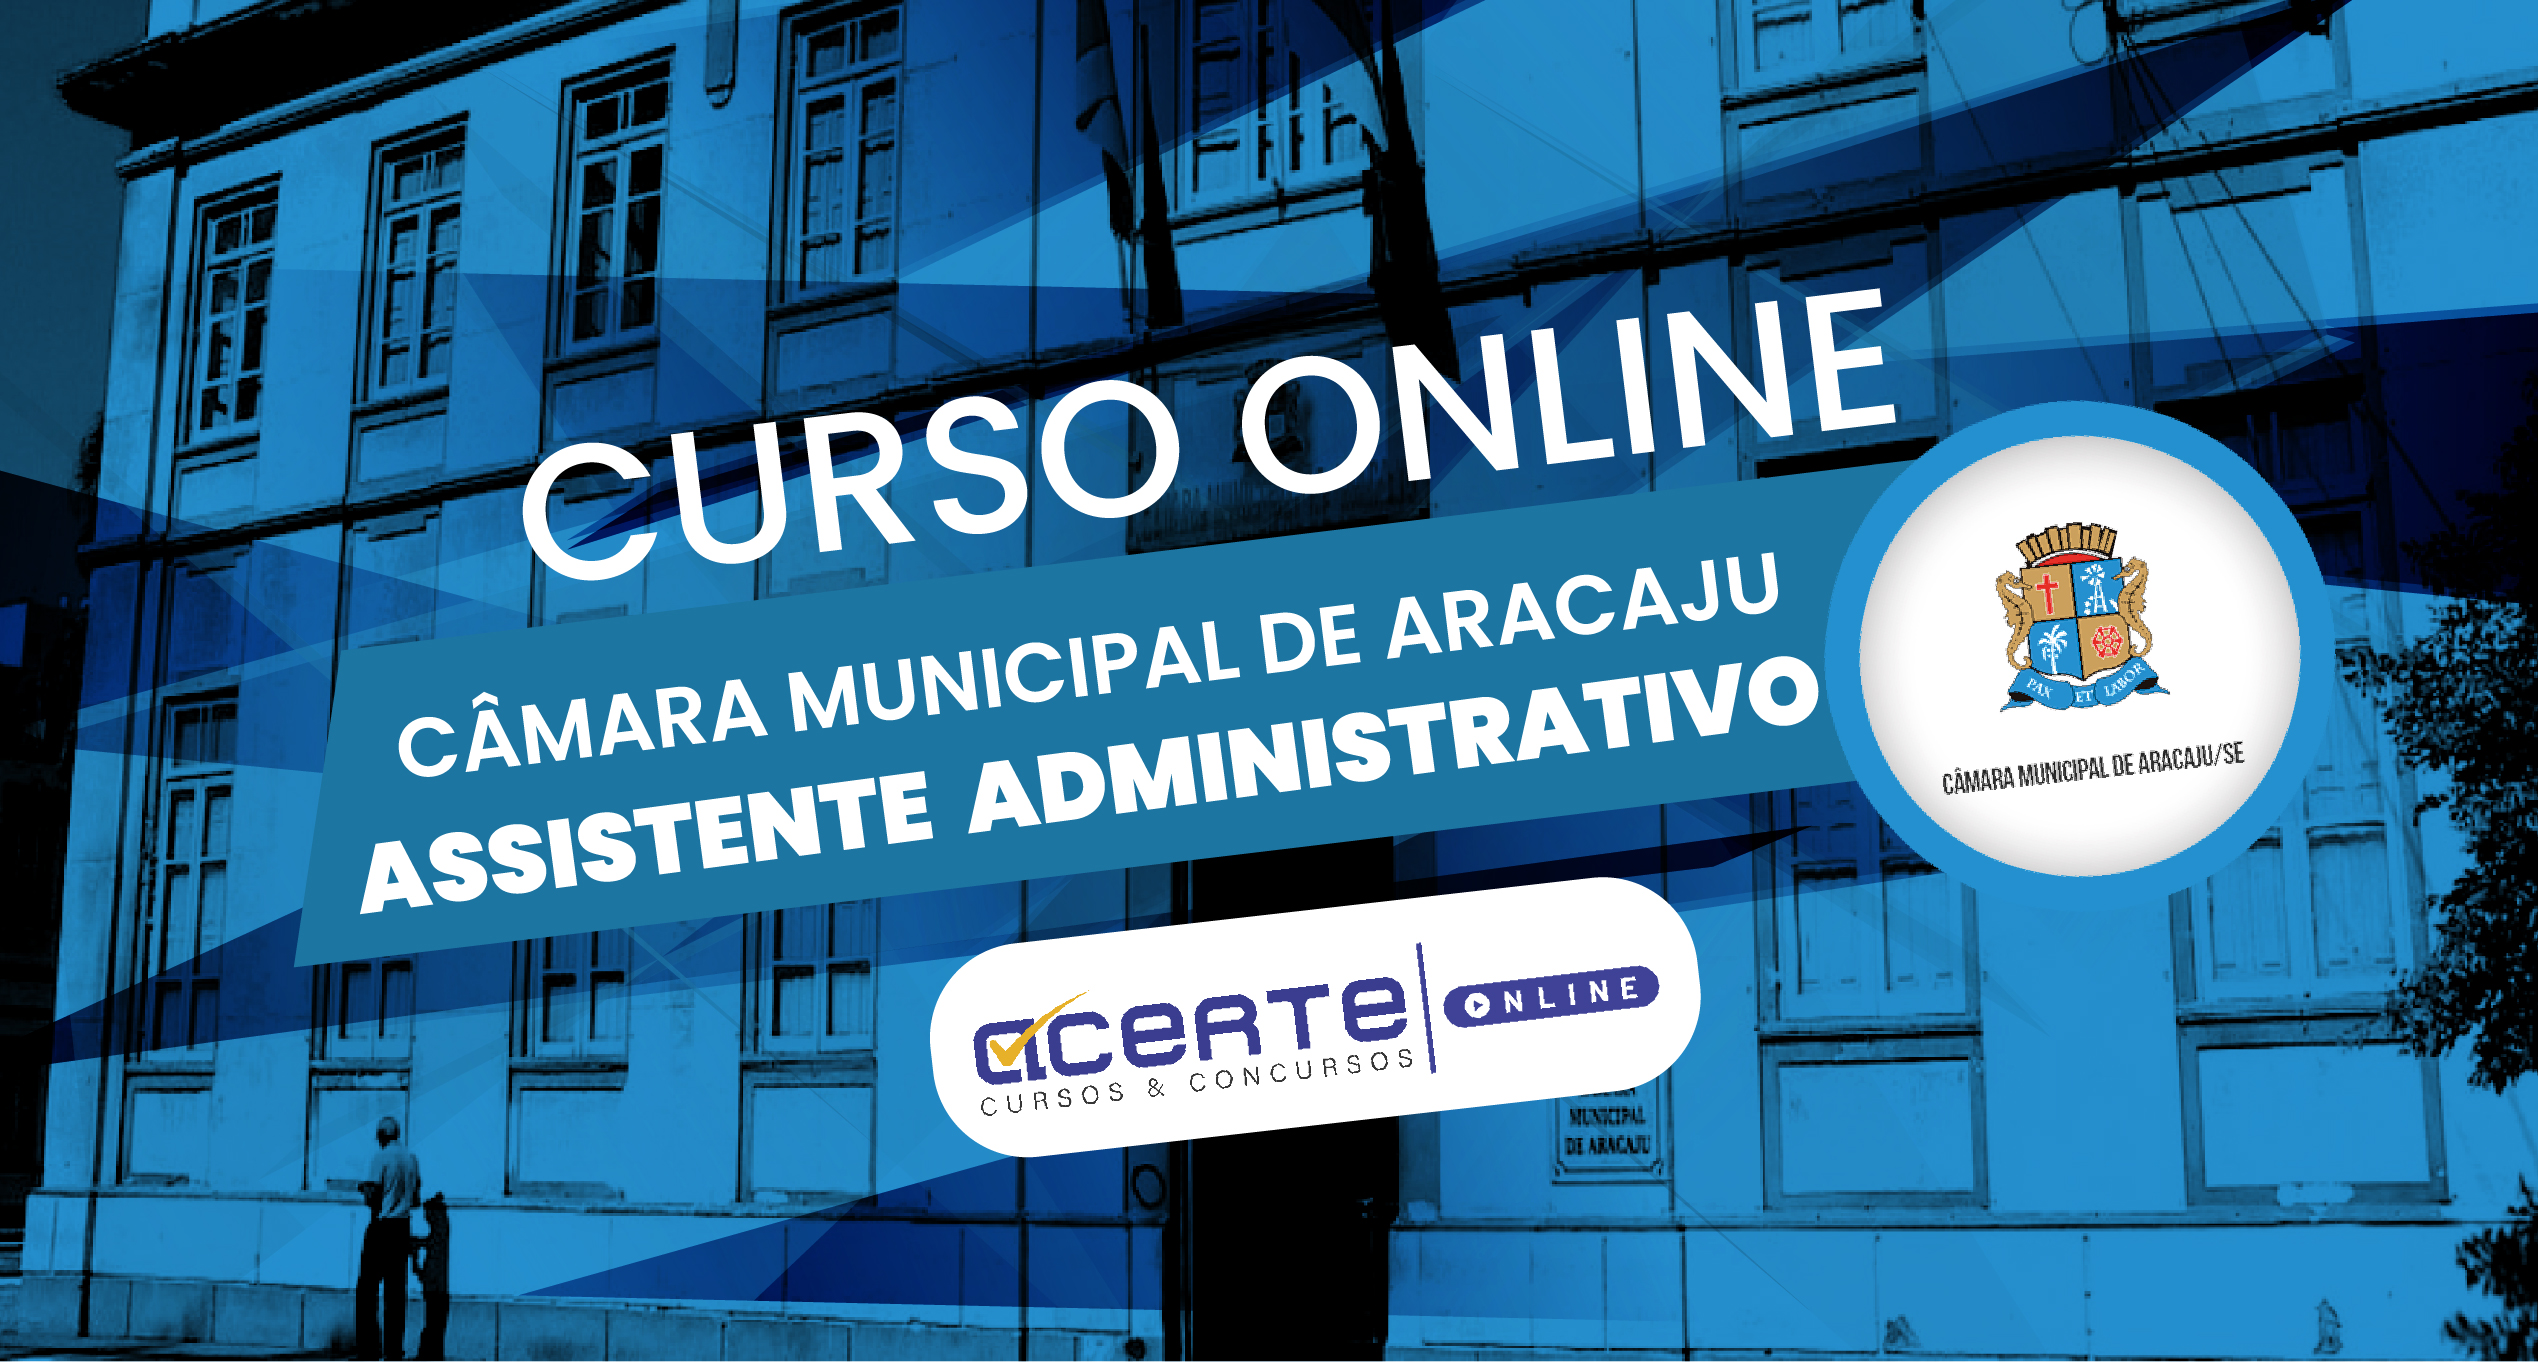 Câmara Municipal de Aracaju - Assistente Administrativo